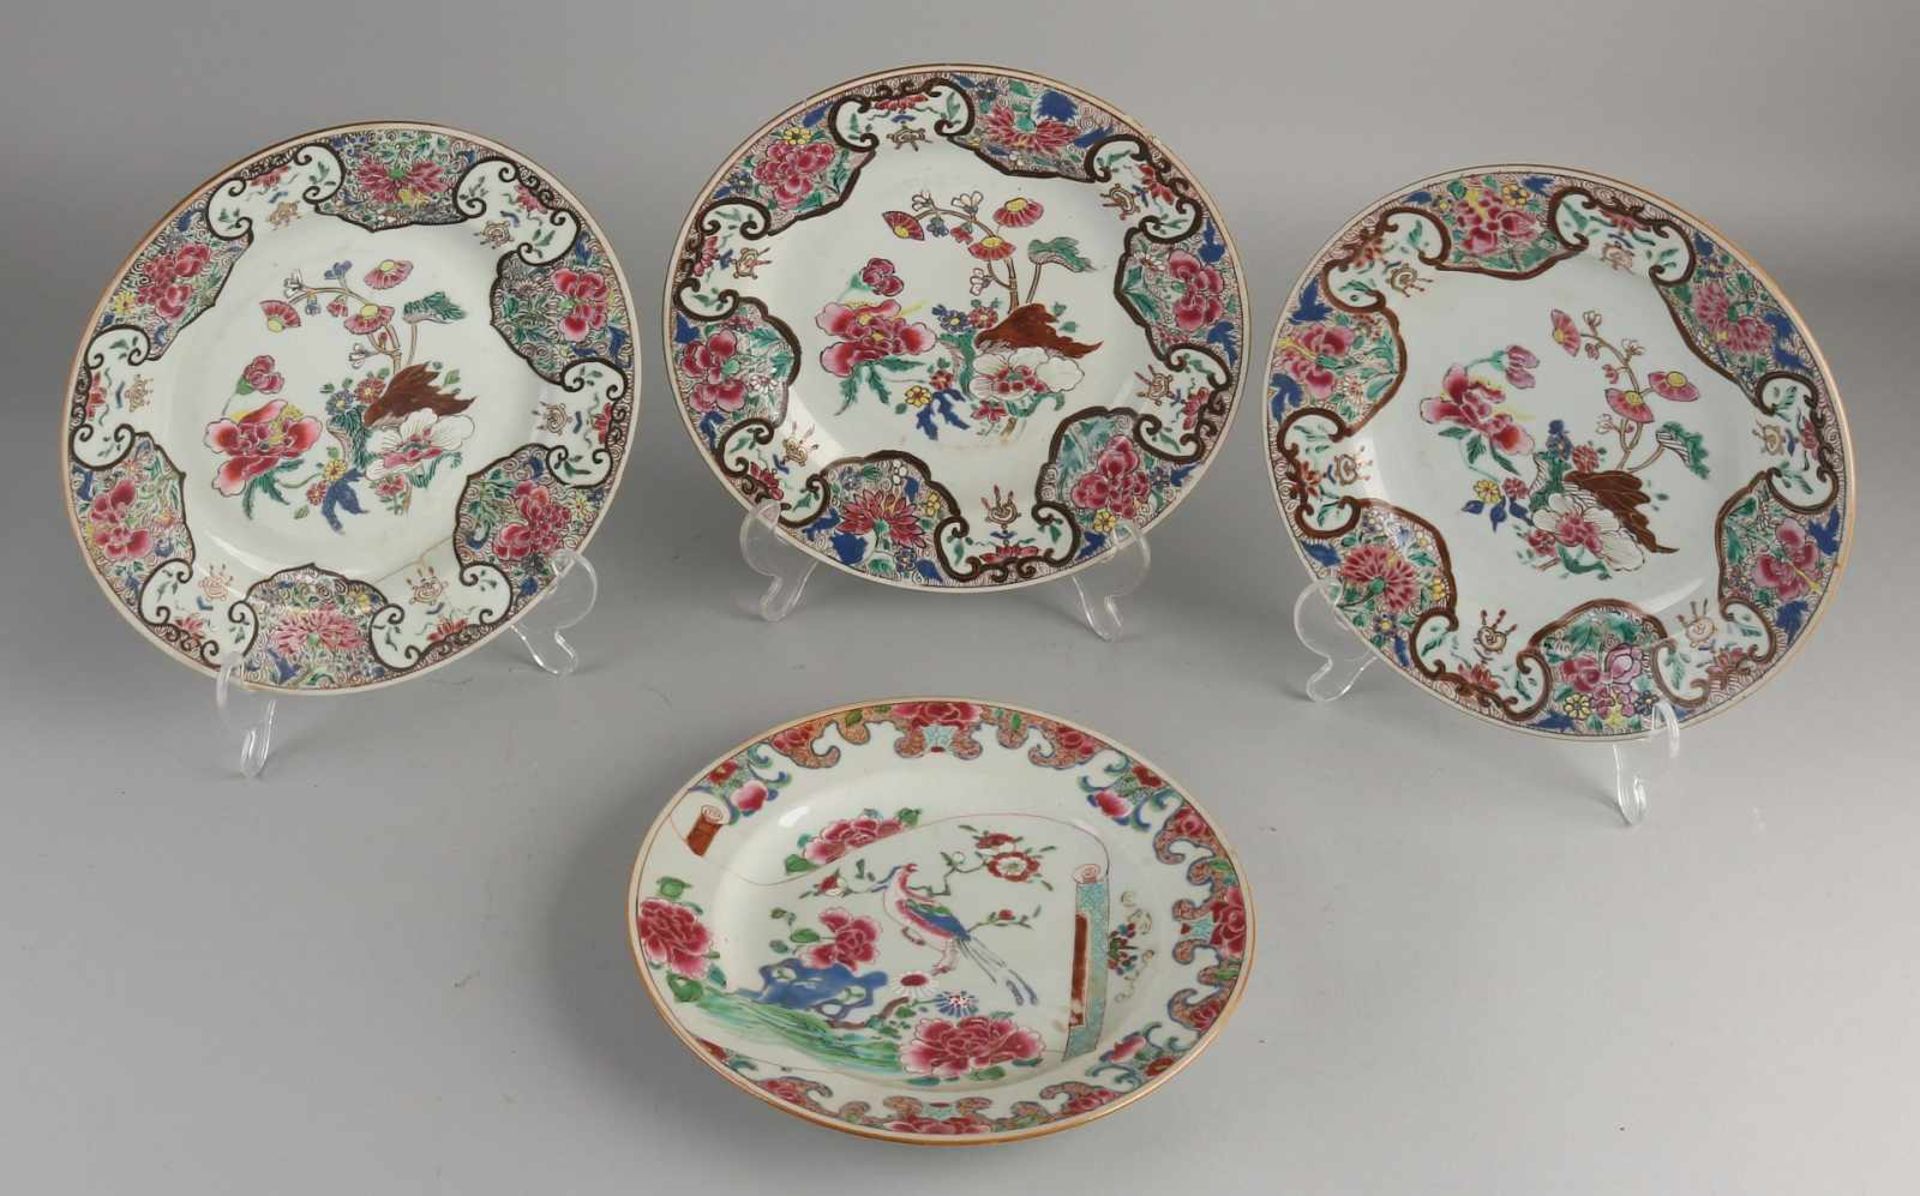 Vier chinesische Porzellanteller aus dem 18. bis 19. Jahrhundert mit Blumendekor. Drei Stücke